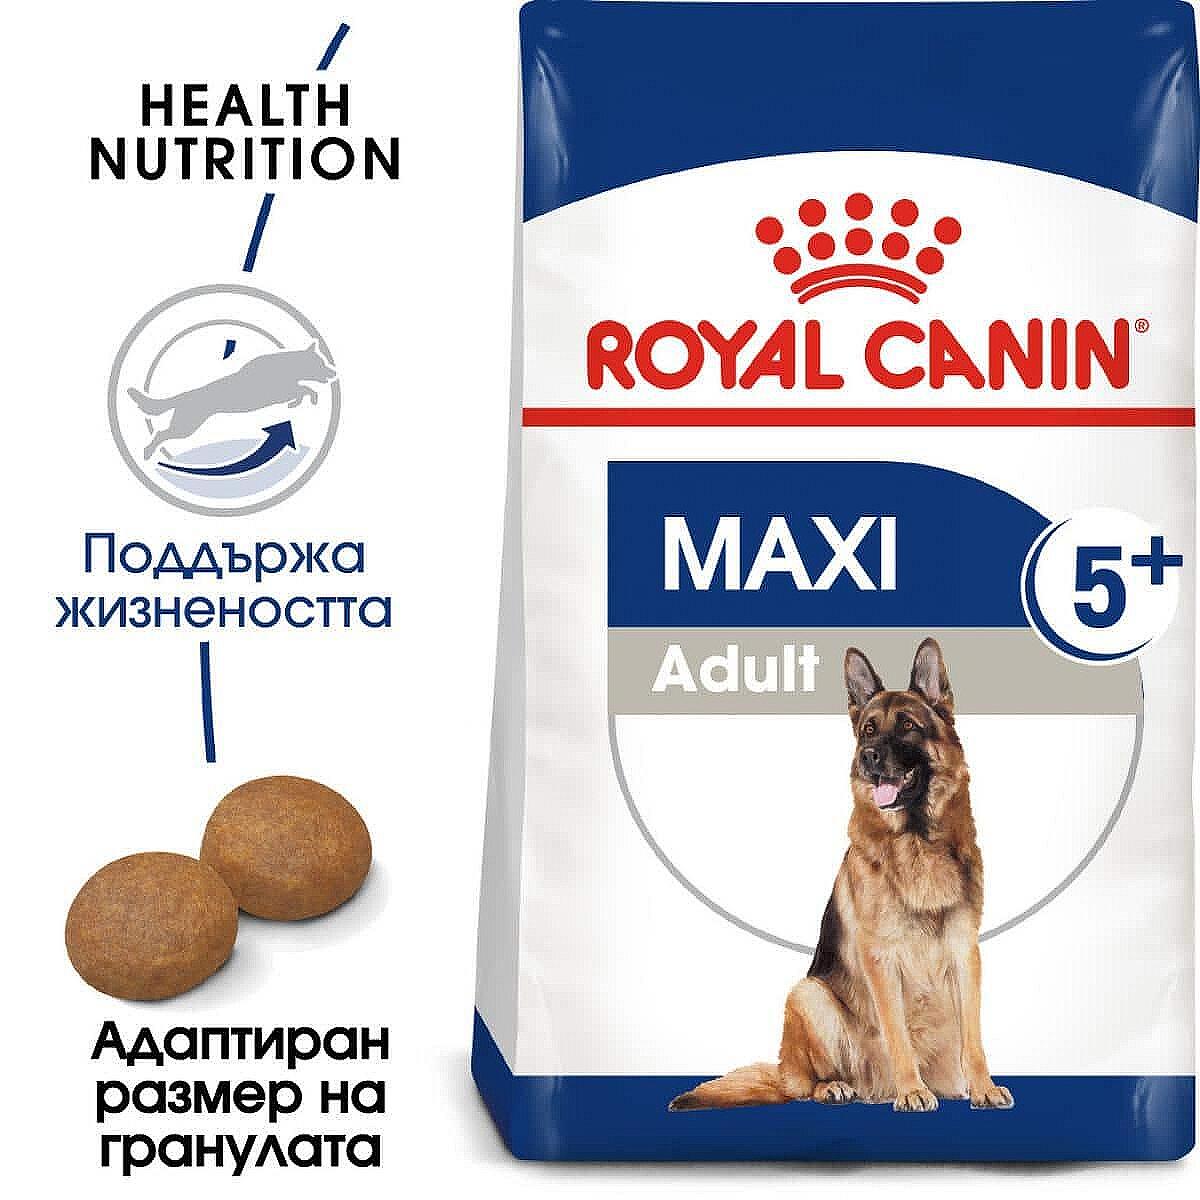 Royal Canin Maxi Adult 5+ - Пълноценна храна за кучета от големите породи, в зряла възраст - 15 кг.